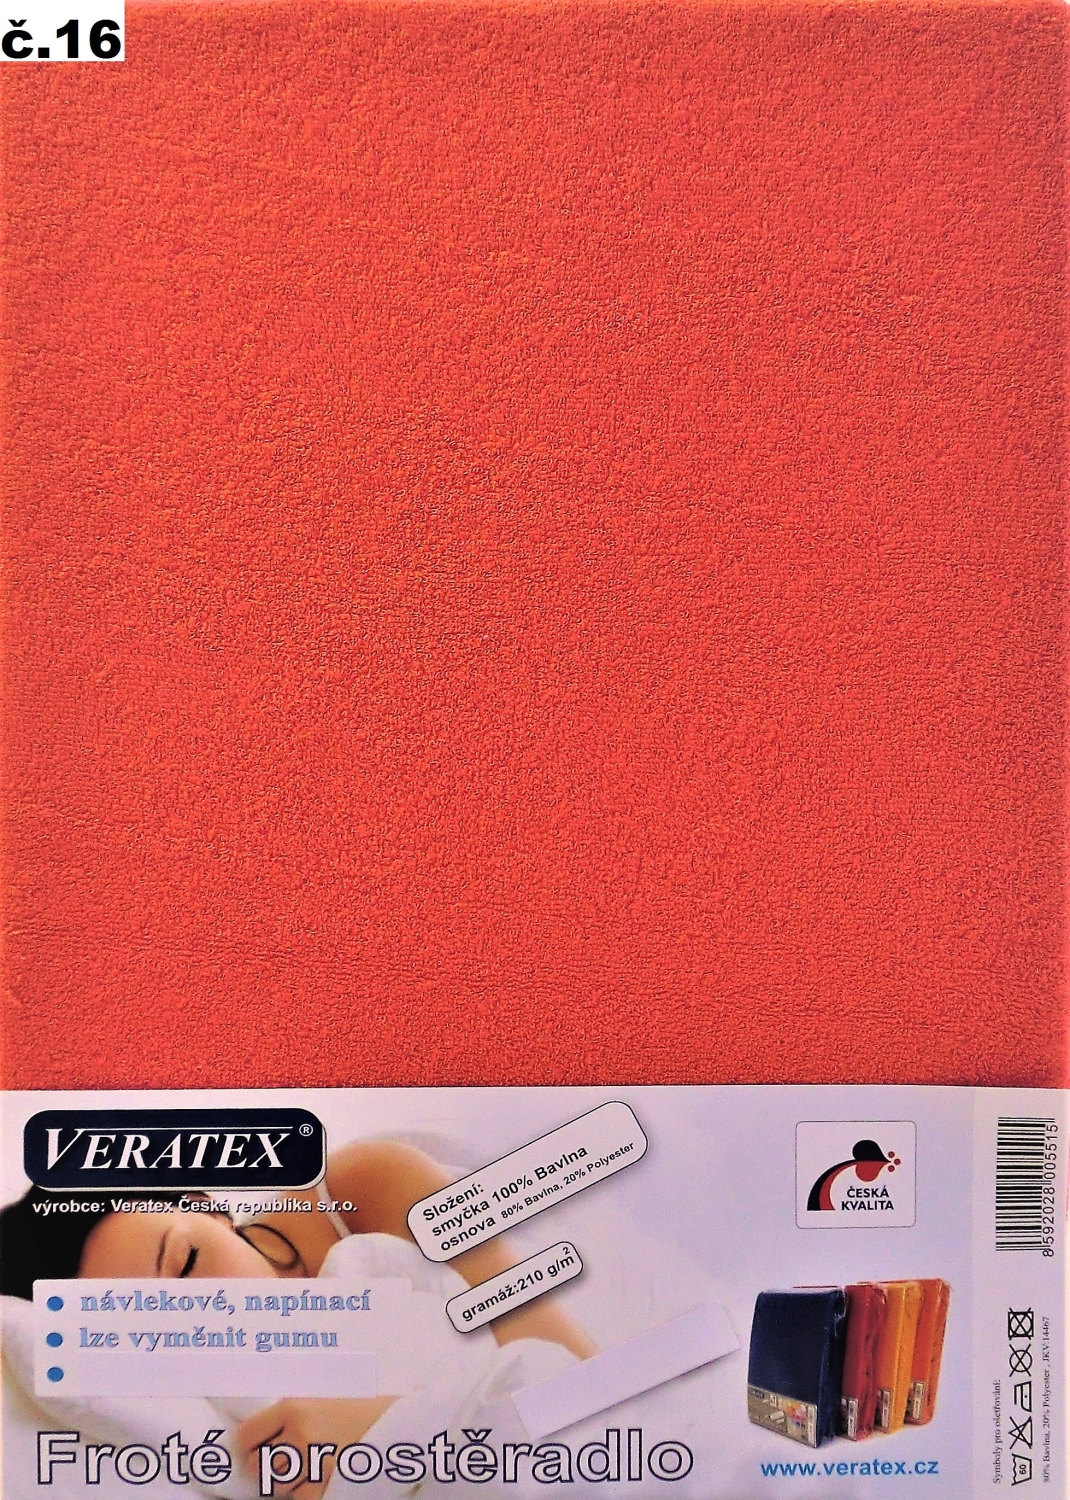 Veratex Froté prostěradlo jednolůžko 90x200/16cm (č.16 malina)